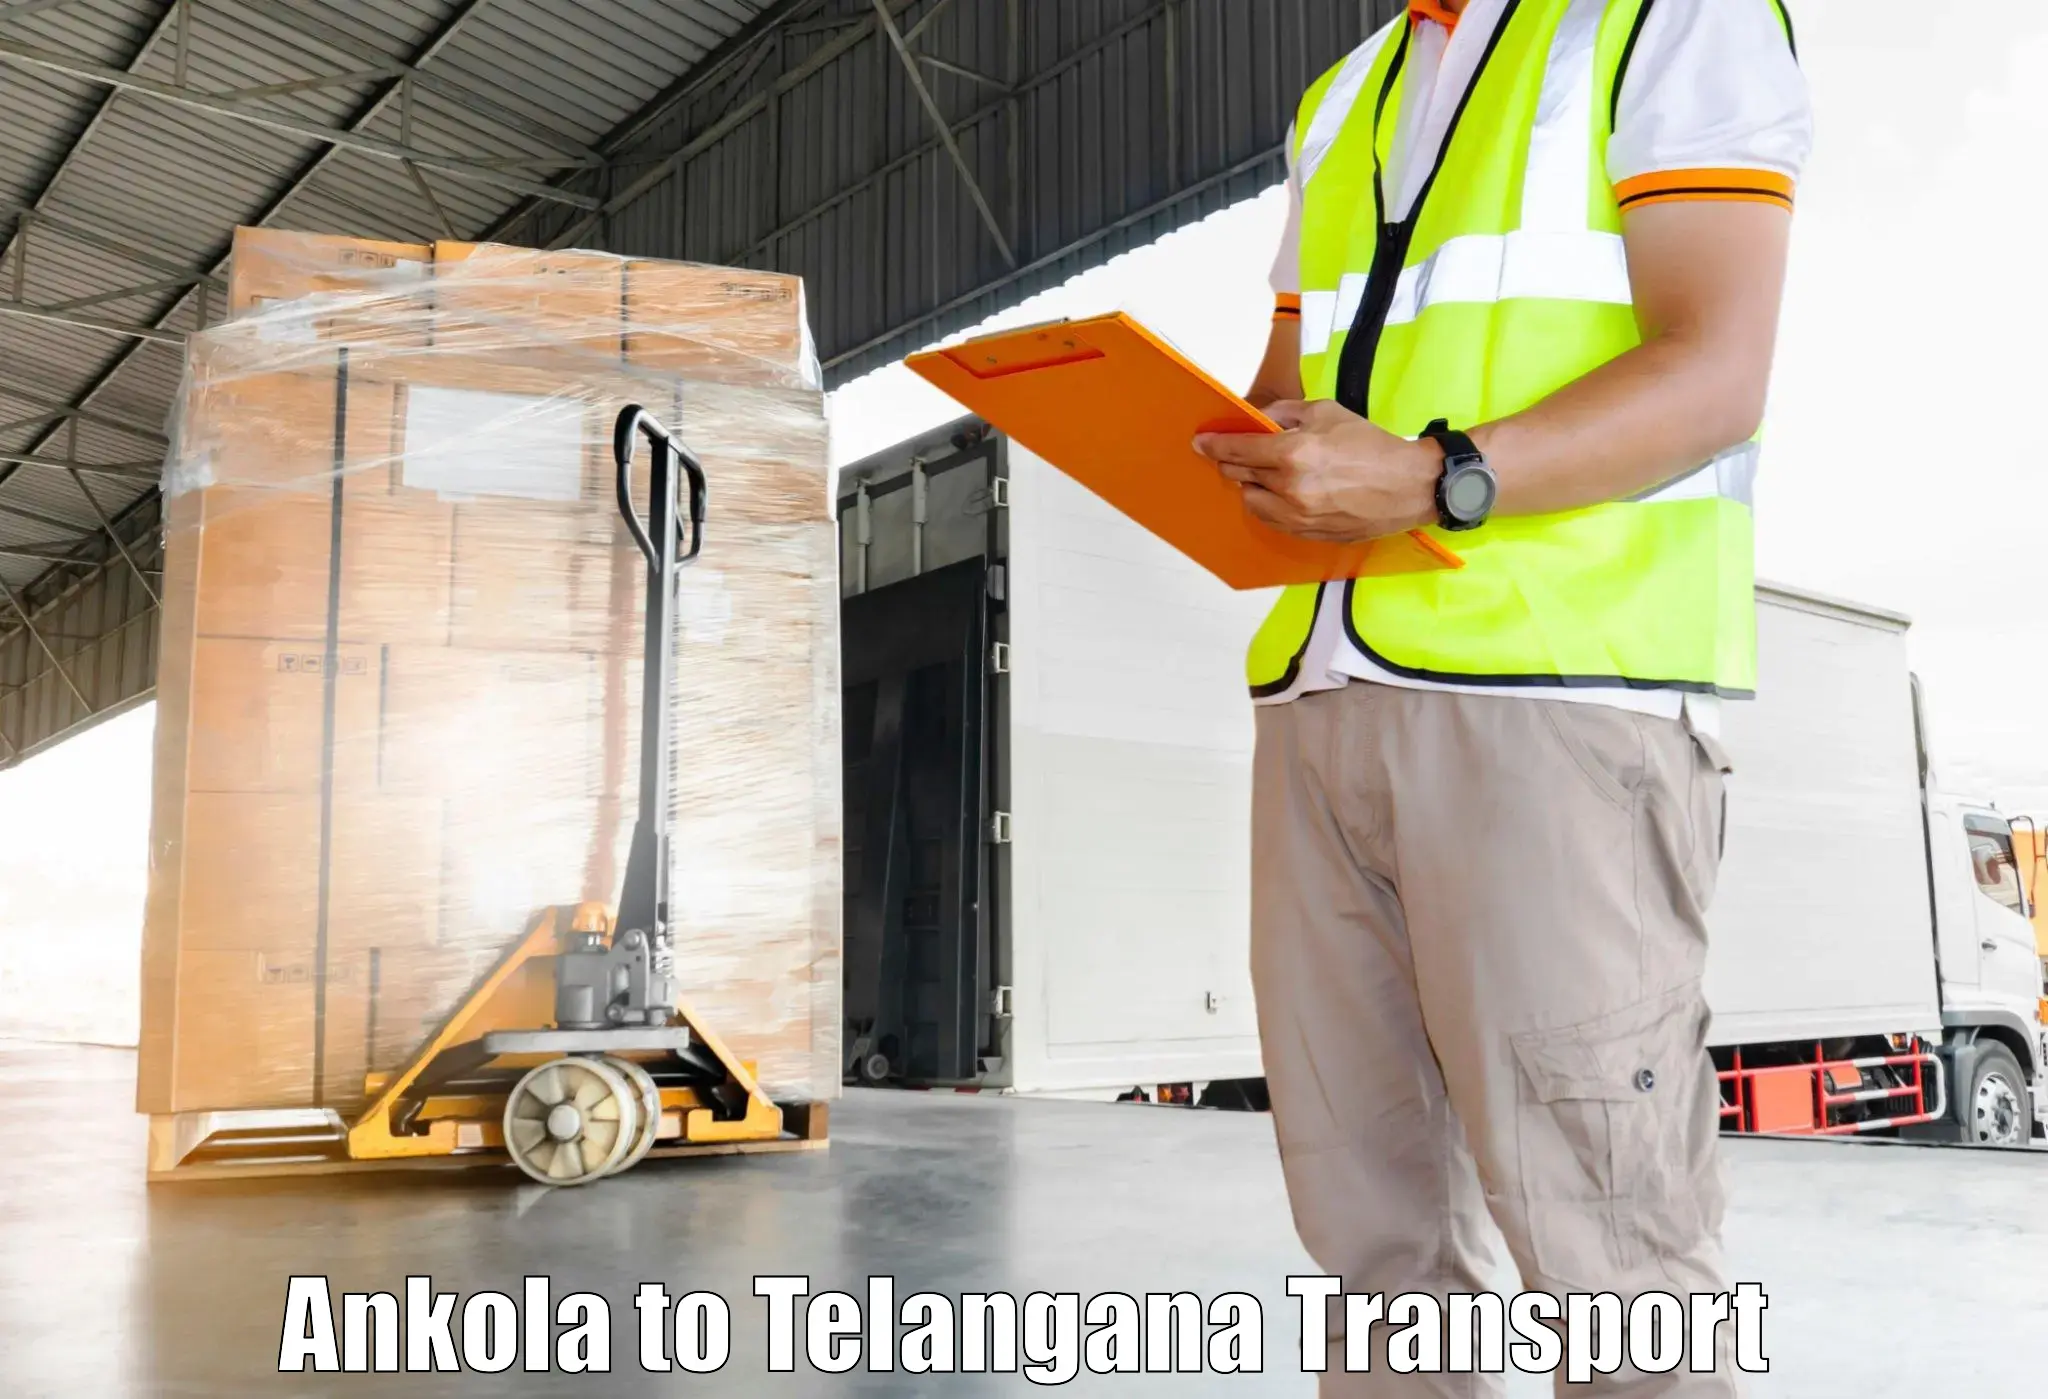 Shipping partner Ankola to Bhainsa